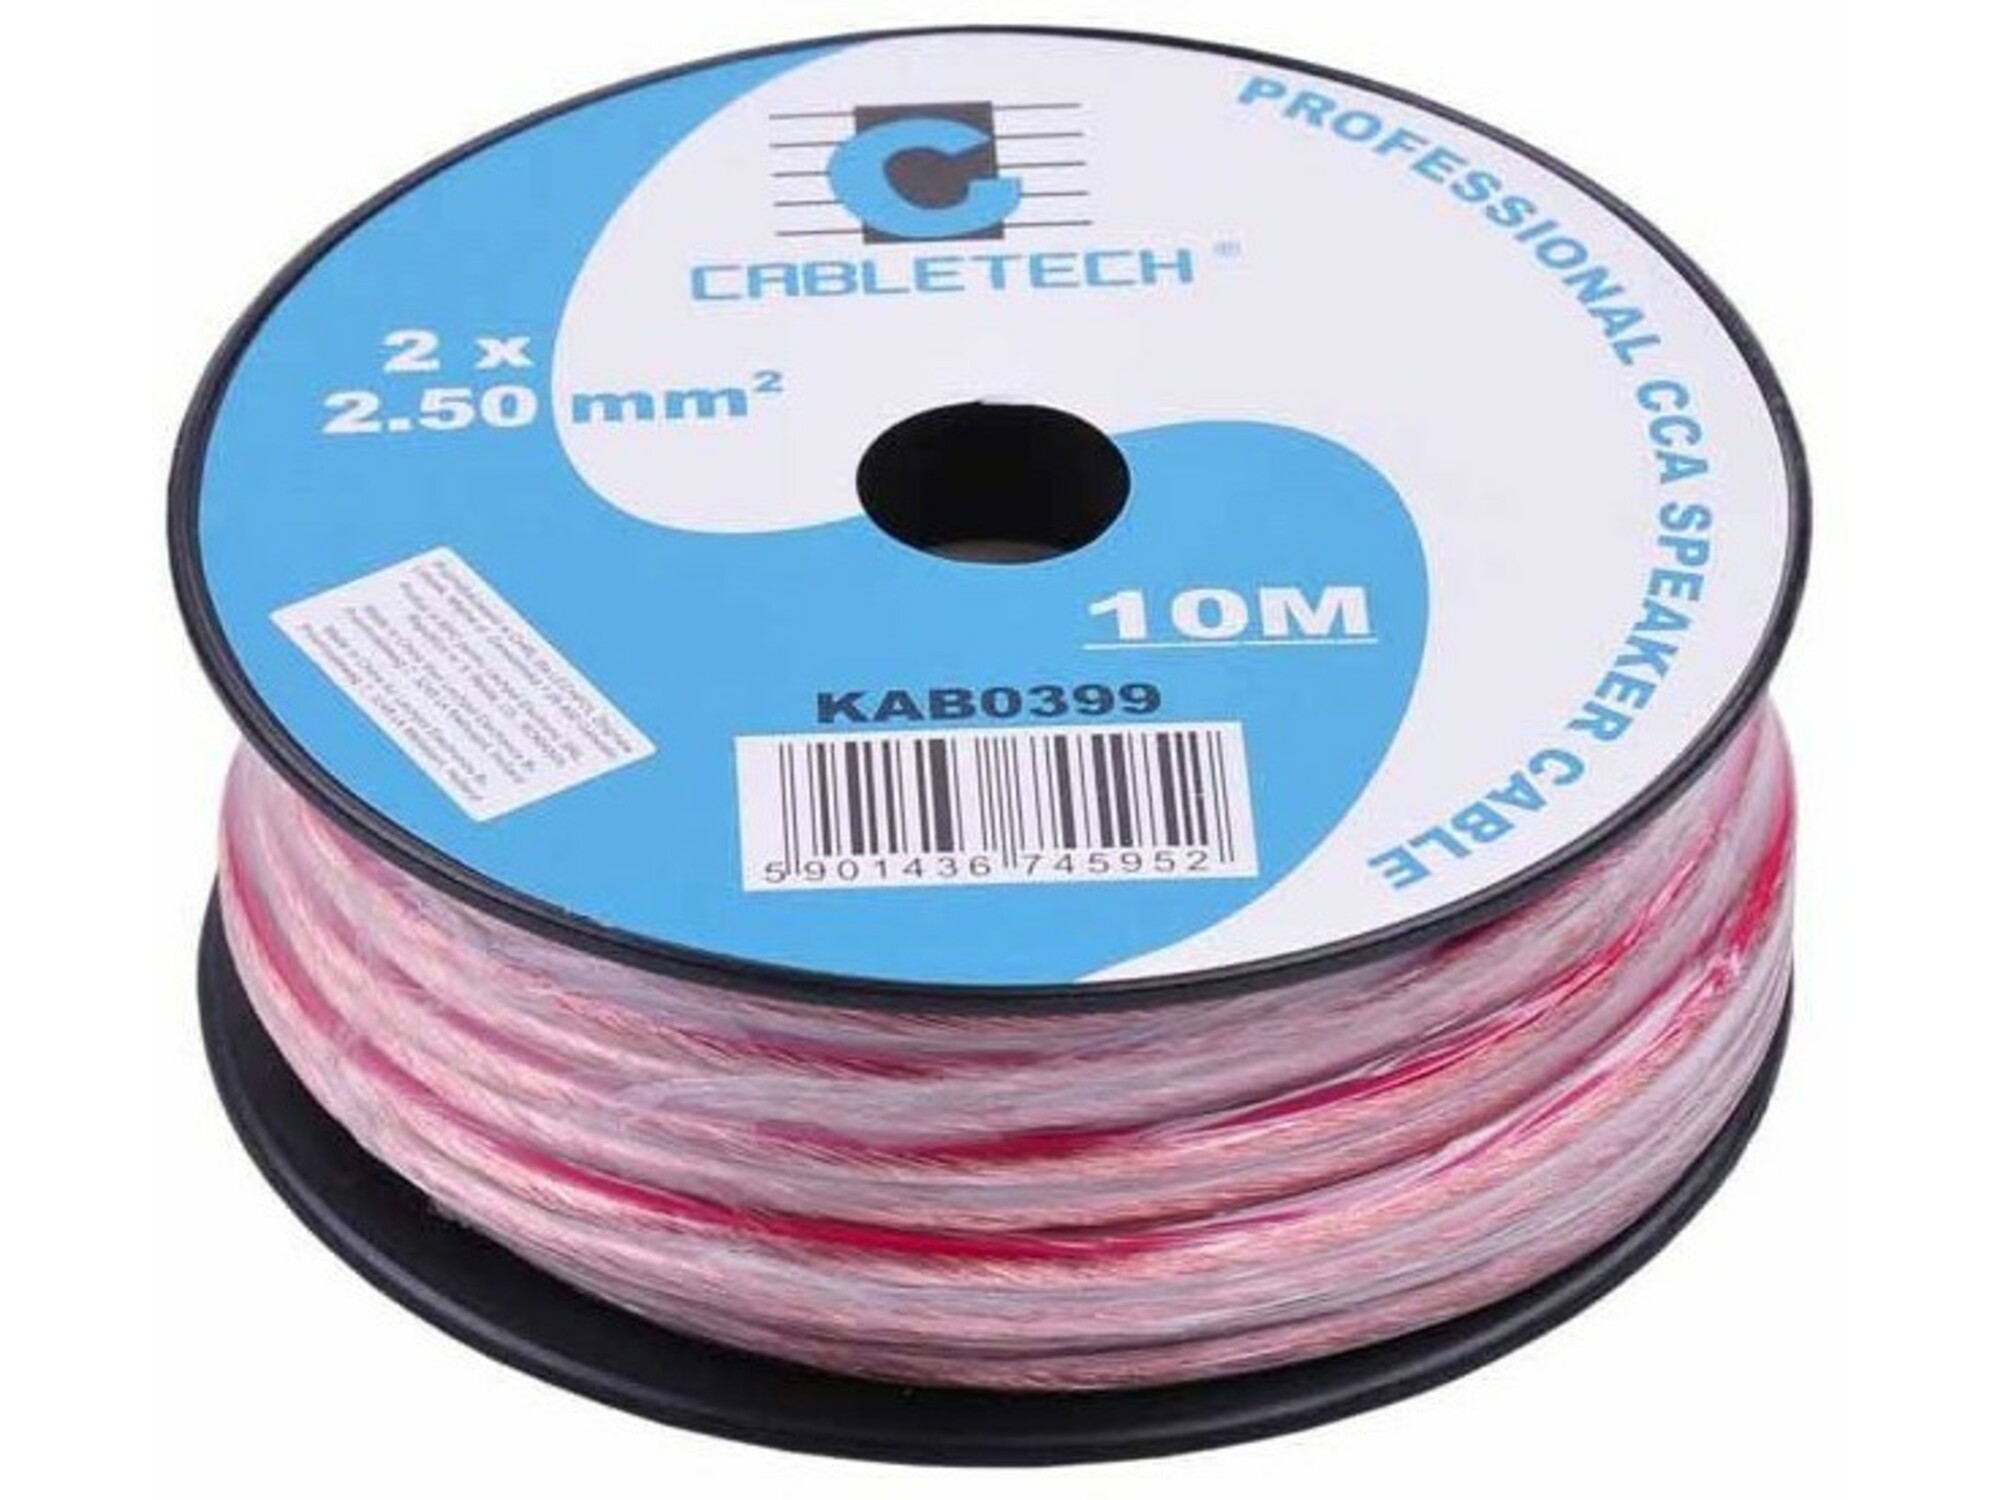 CABLETECH kabel za avtozvočnike  10m 2x2.5mm SW-2X2.5 TR/10 transparent